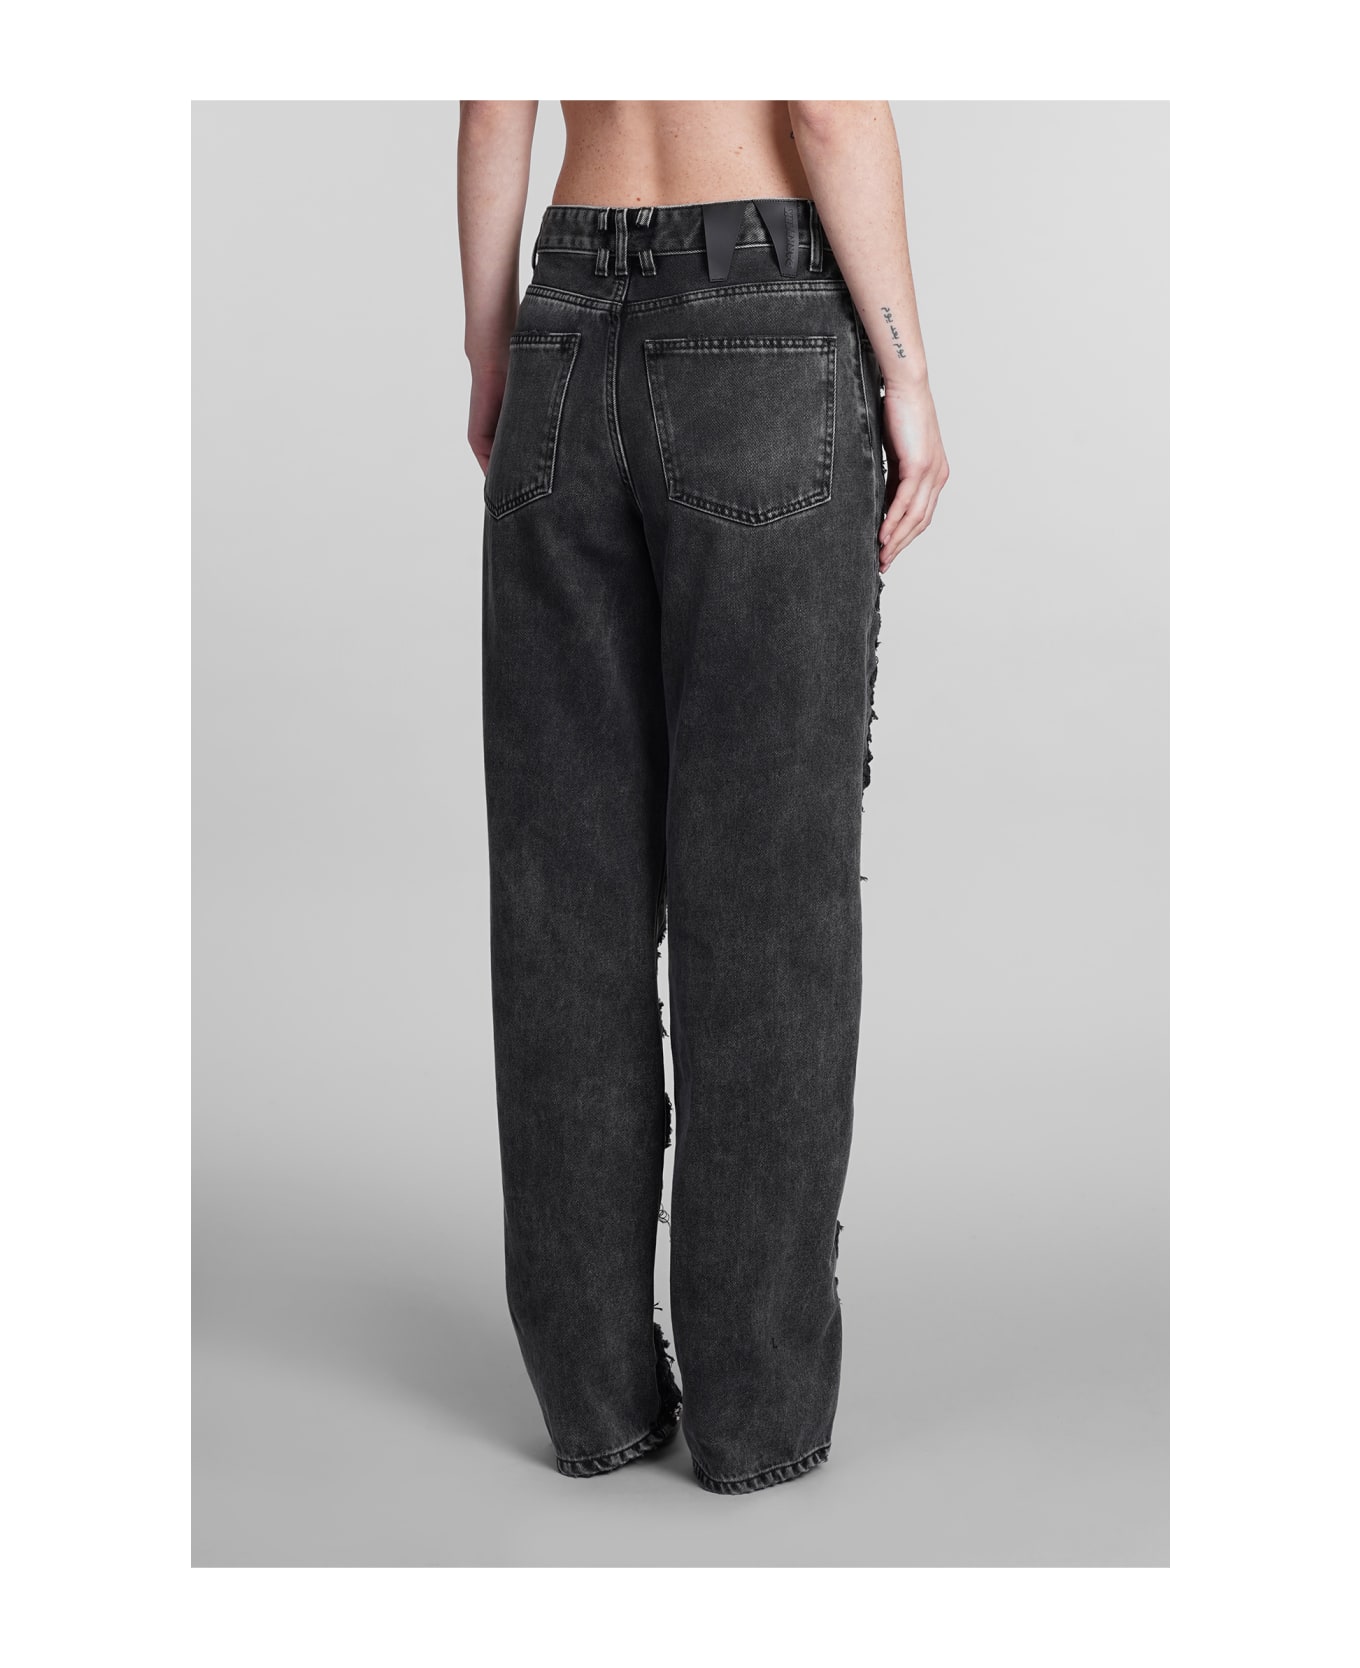 DARKPARK Karen Jeans In Black Cotton - black ボトムス